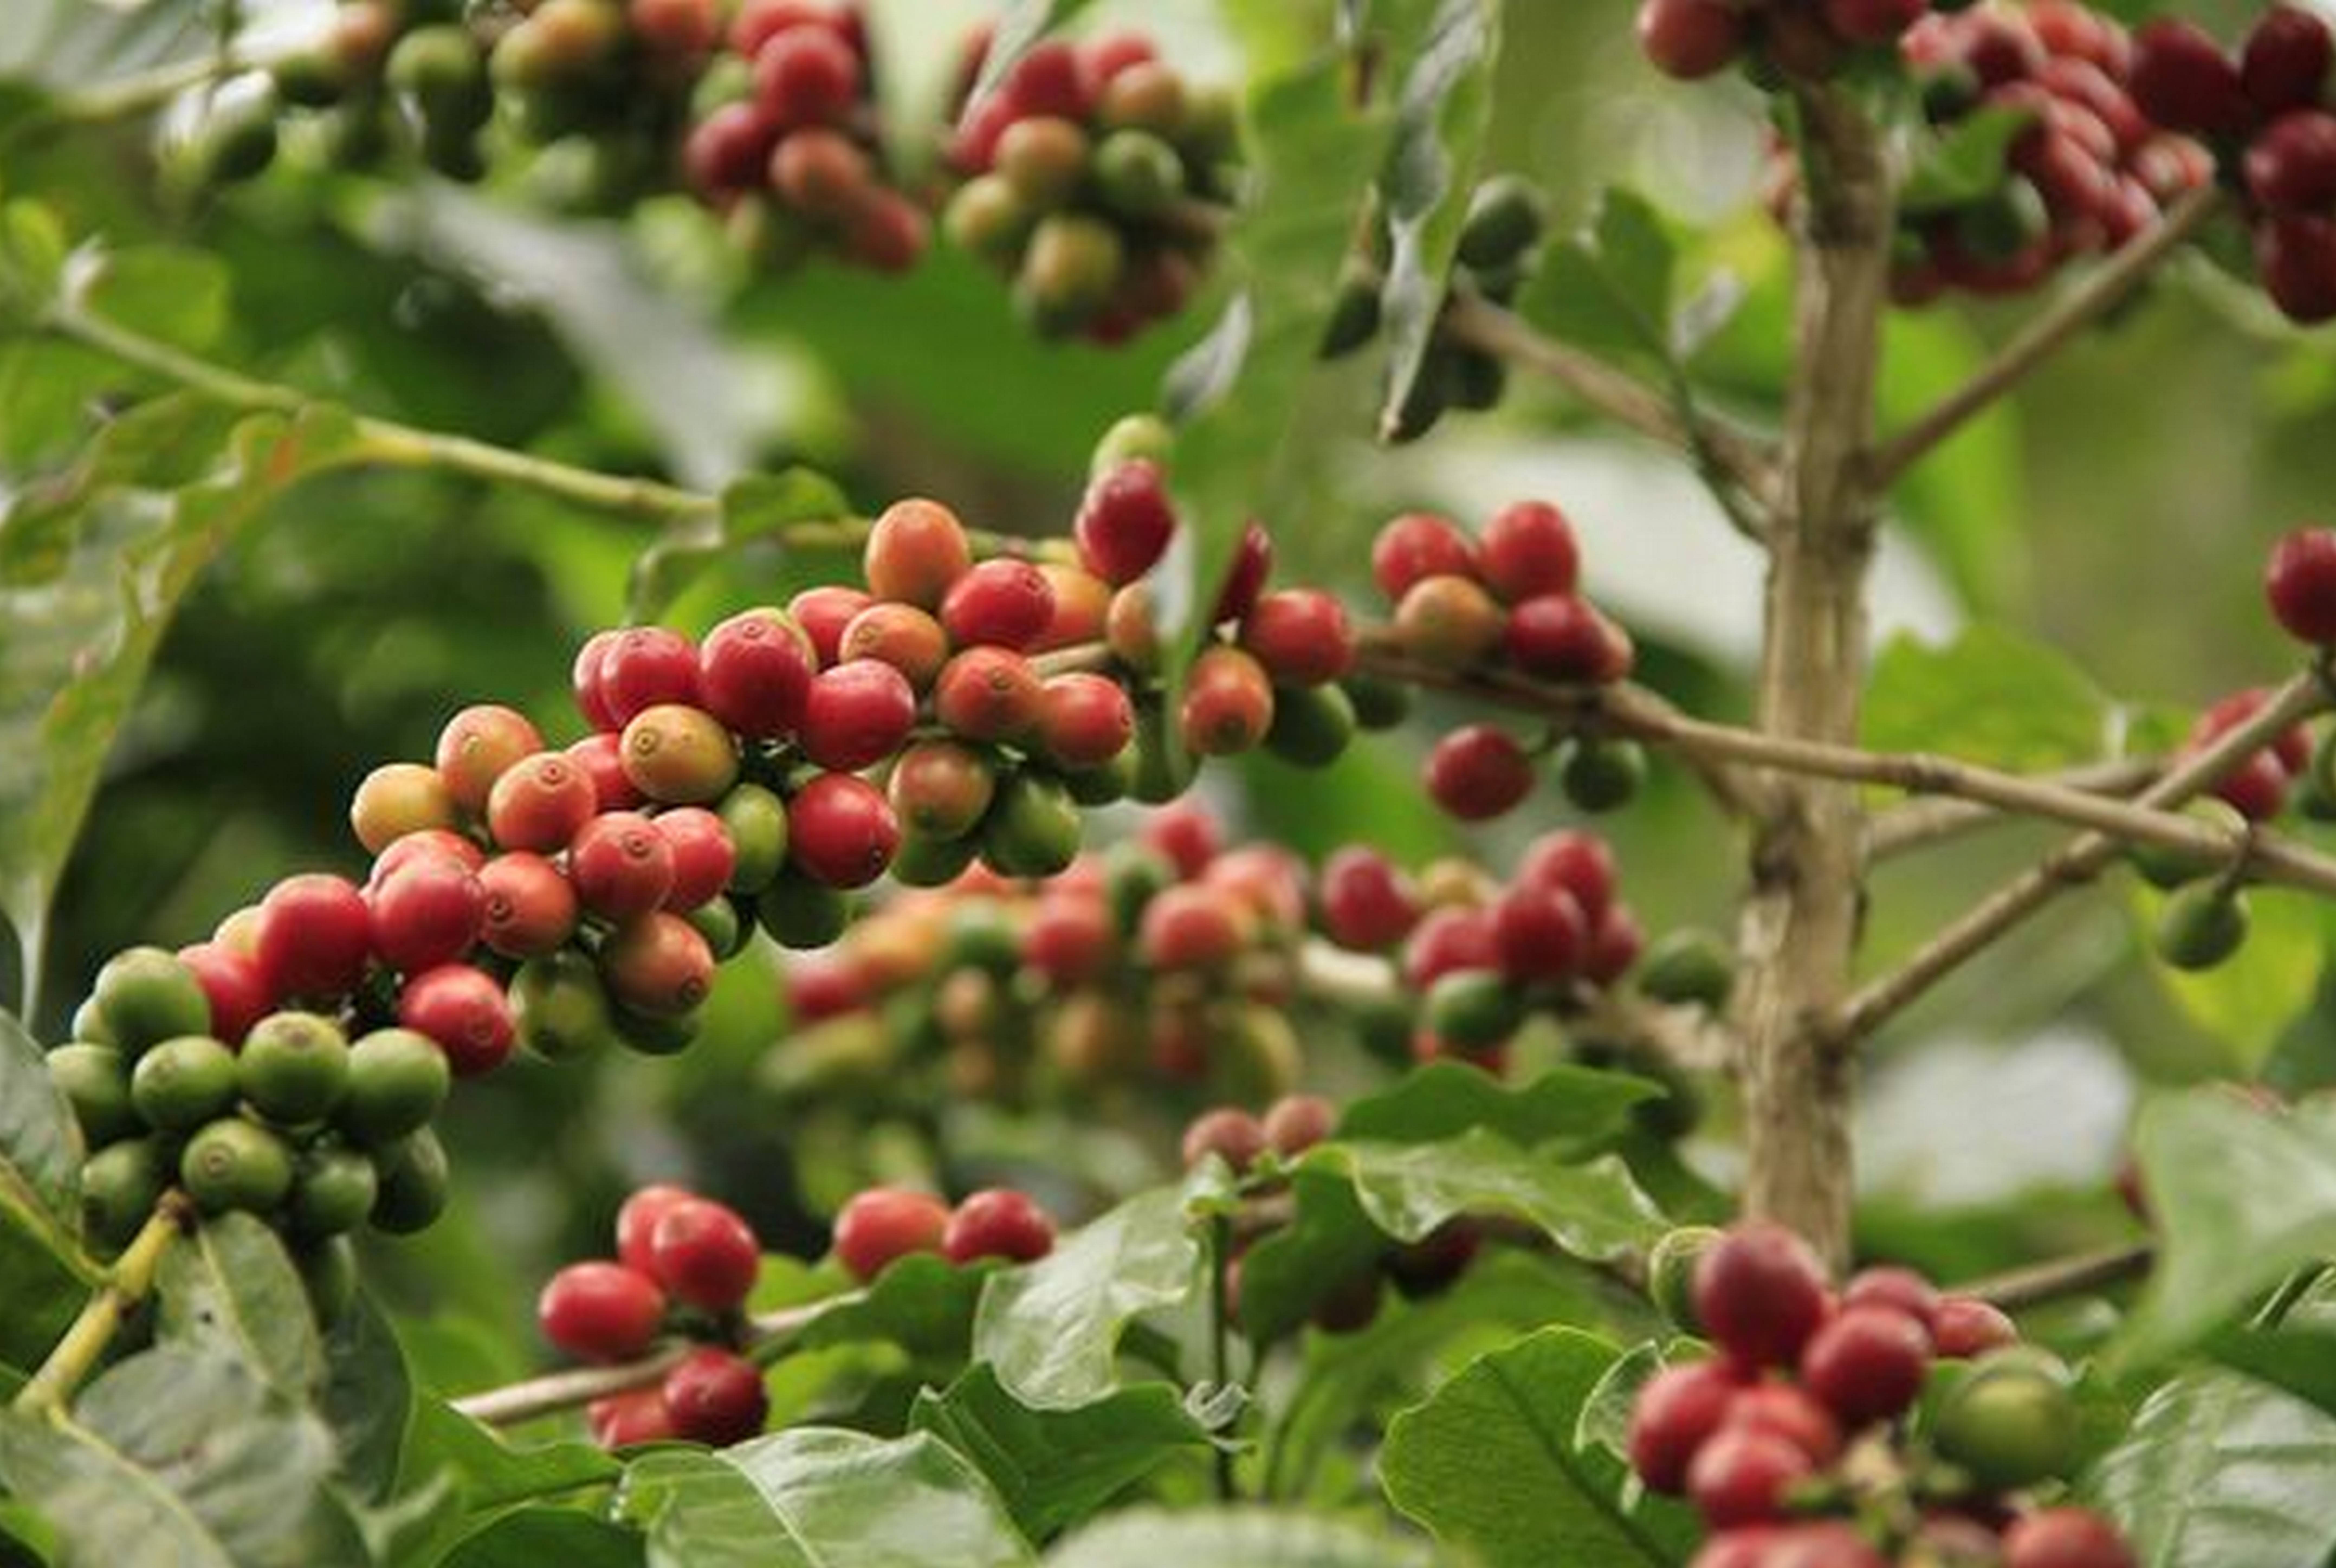 9 важных нюансов по выращиванию кофе